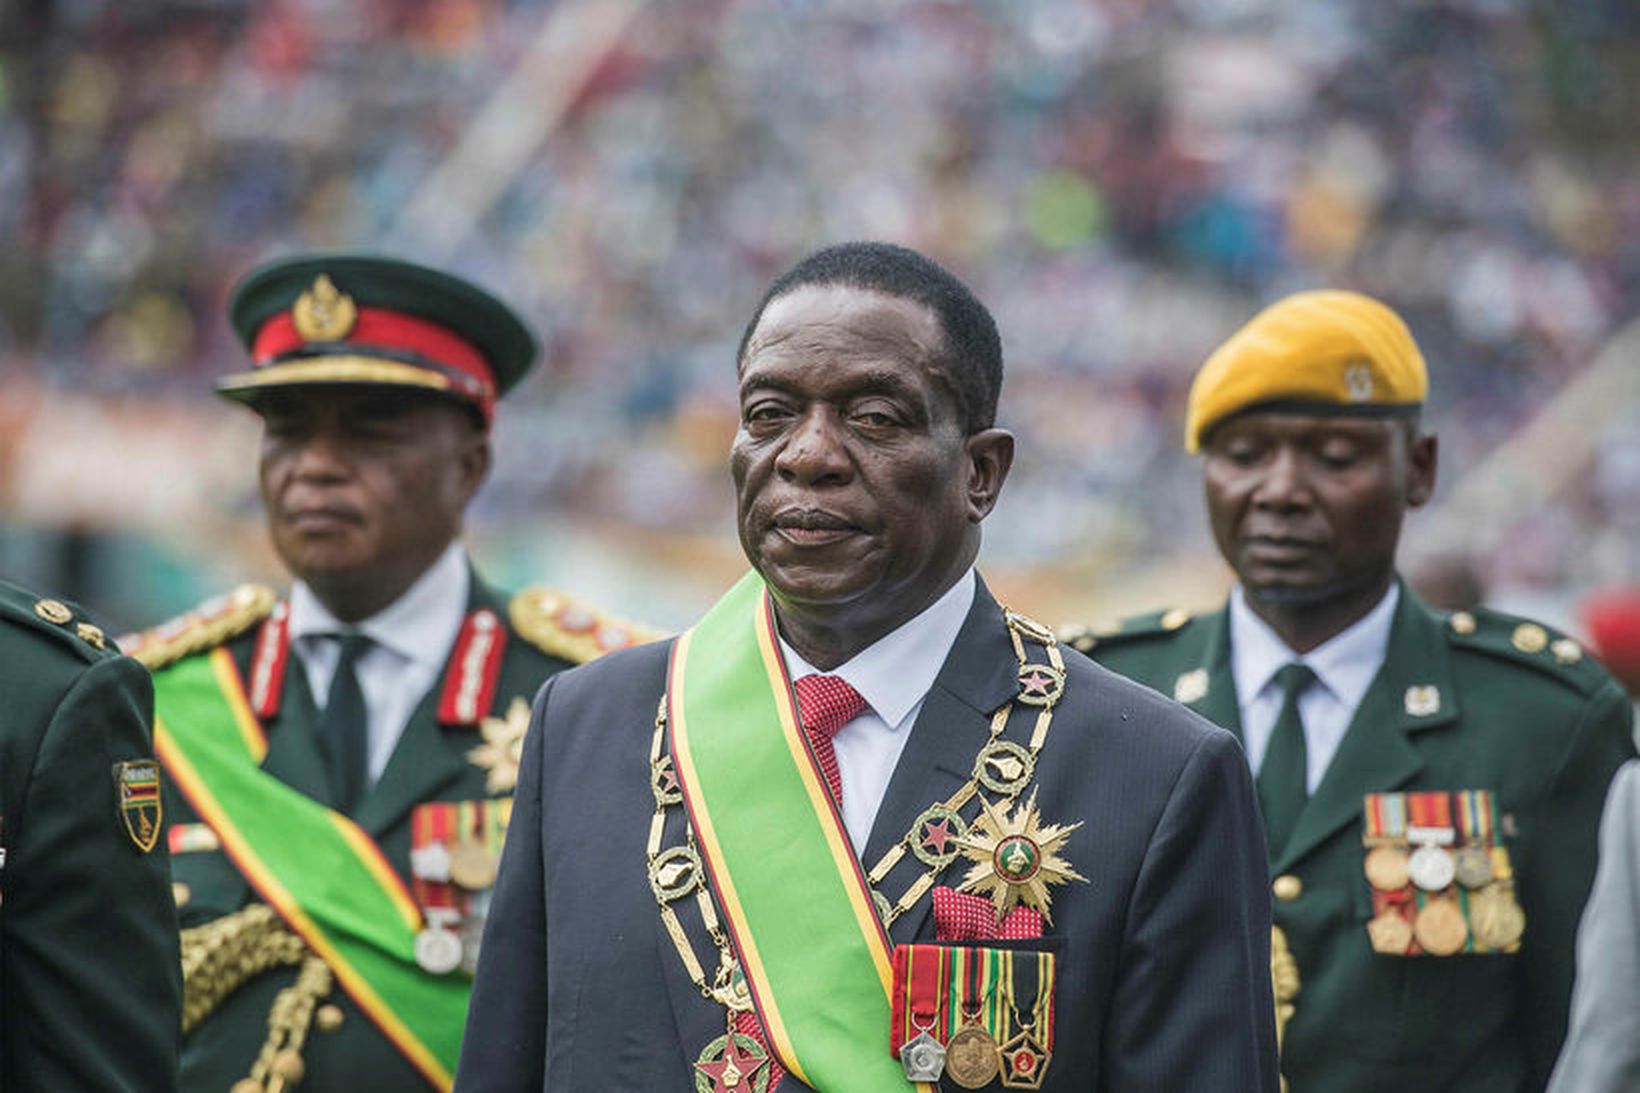 Emmerson Mnangagwa forseti Simbabve hefur verið gagnrýndur fyrir að velja …